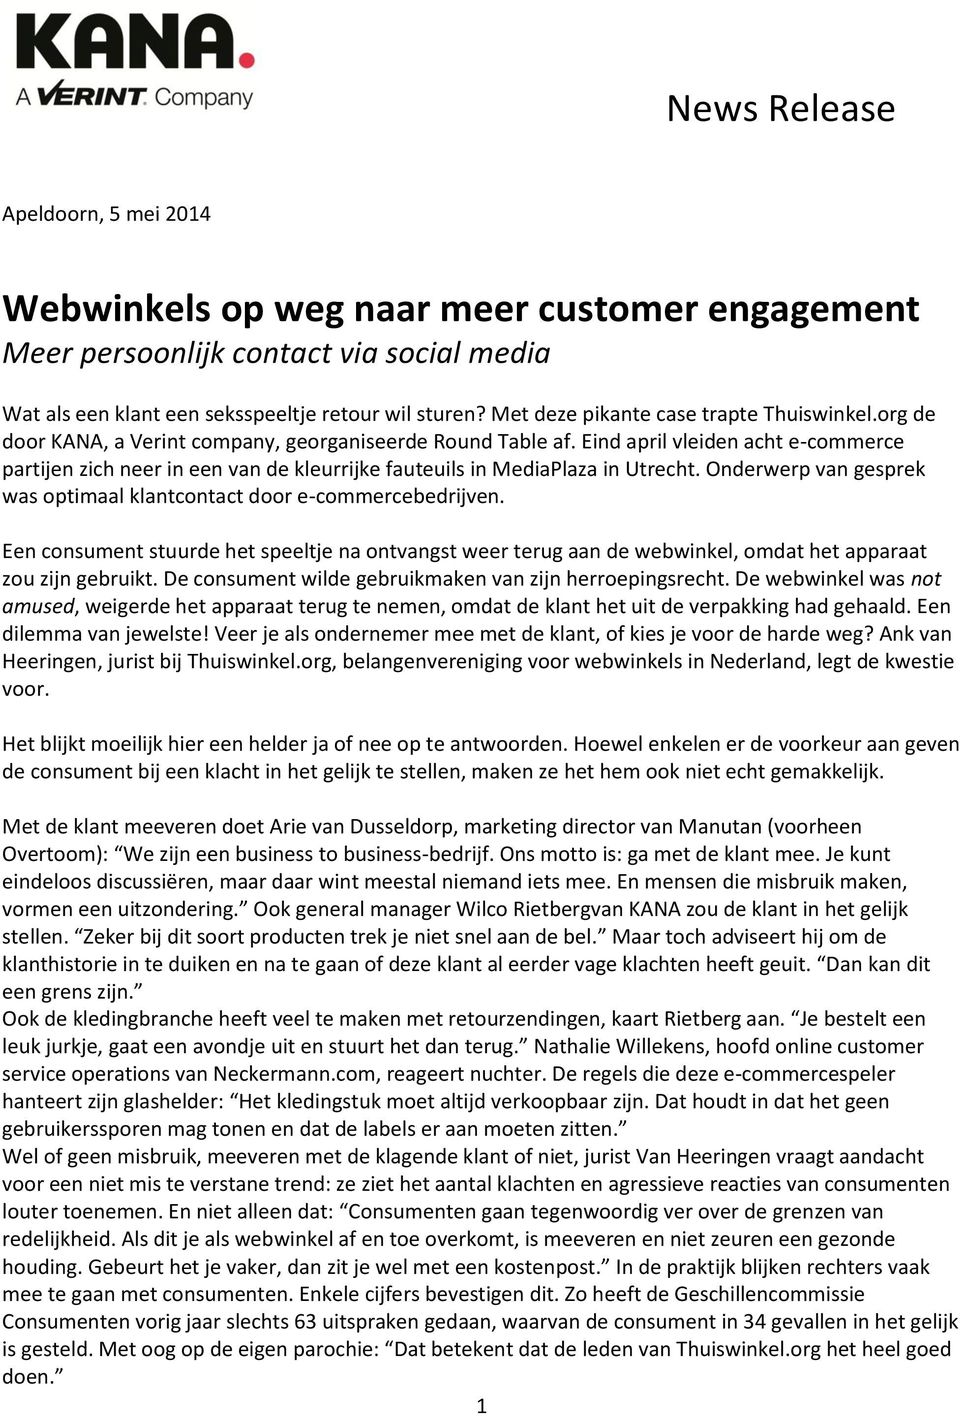 Eind april vleiden acht e-commerce partijen zich neer in een van de kleurrijke fauteuils in MediaPlaza in Utrecht. Onderwerp van gesprek was optimaal klantcontact door e-commercebedrijven.